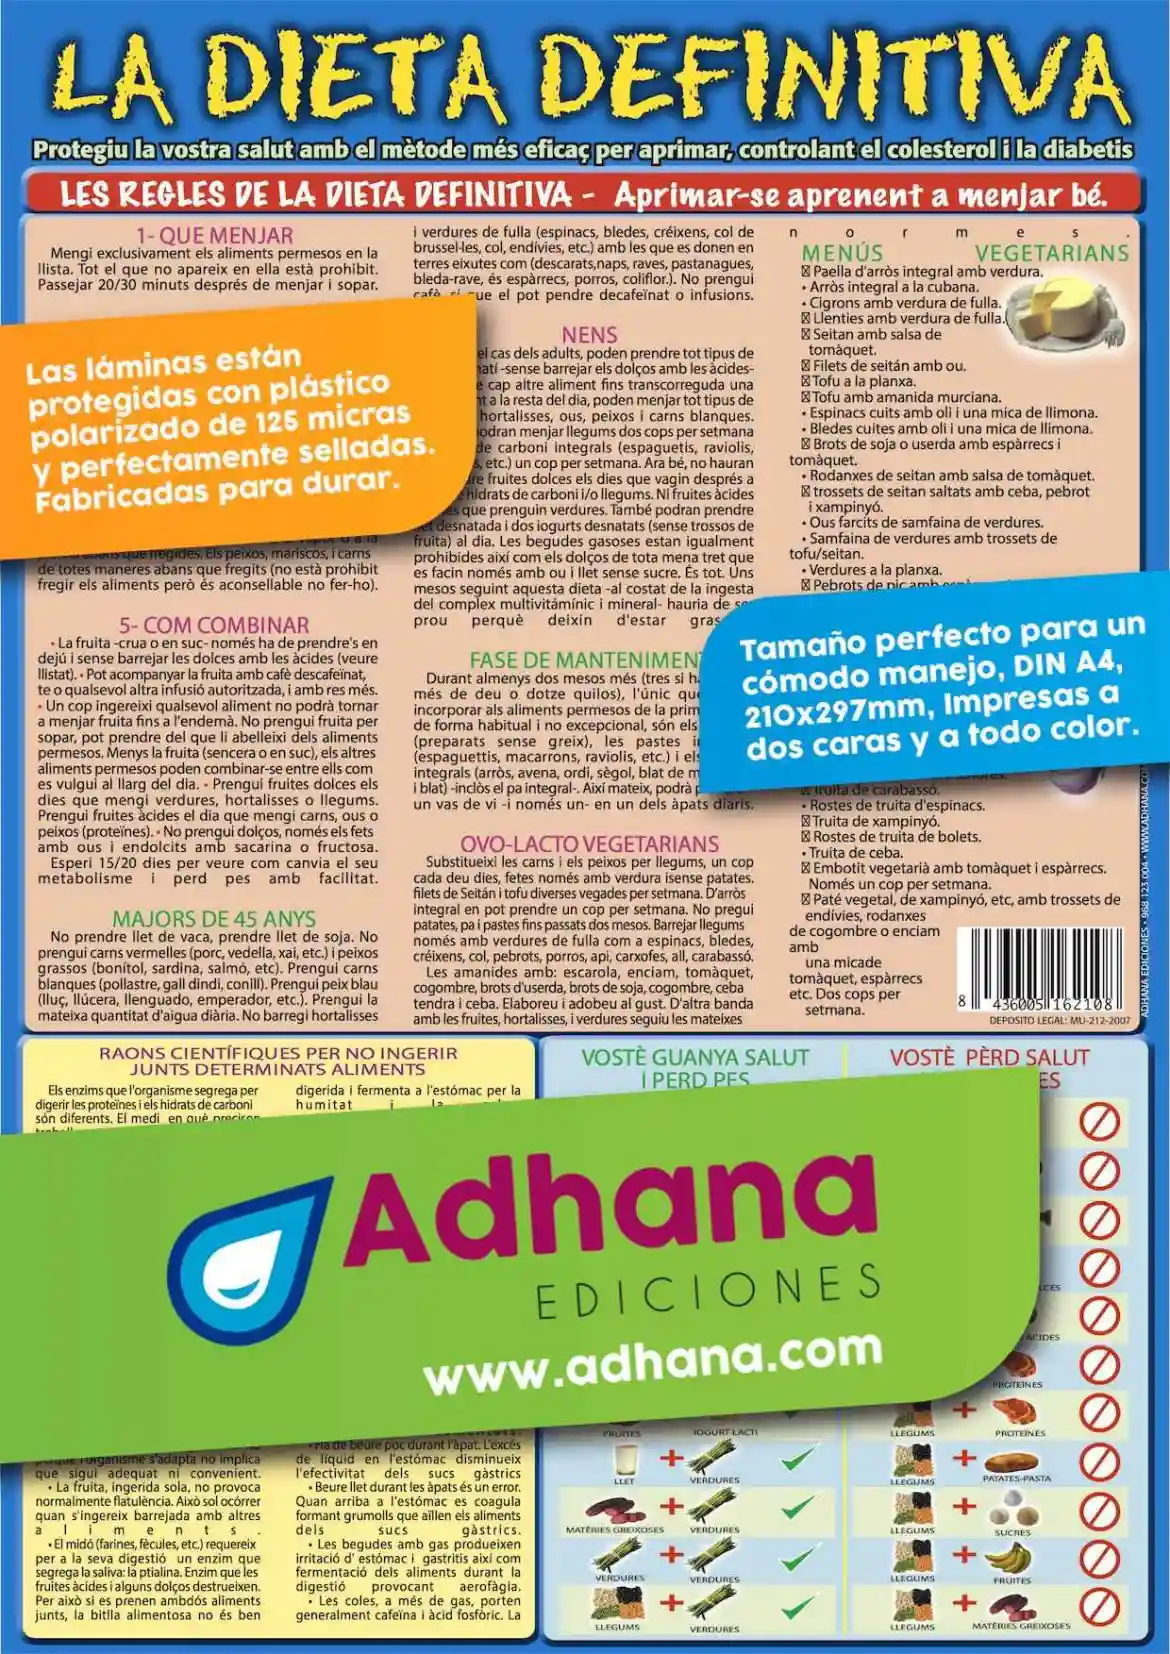 Dieta Definitiva Adhana Ediciones Láminas Carteles Póster Educativos Y Didácticos Idiomas 5305